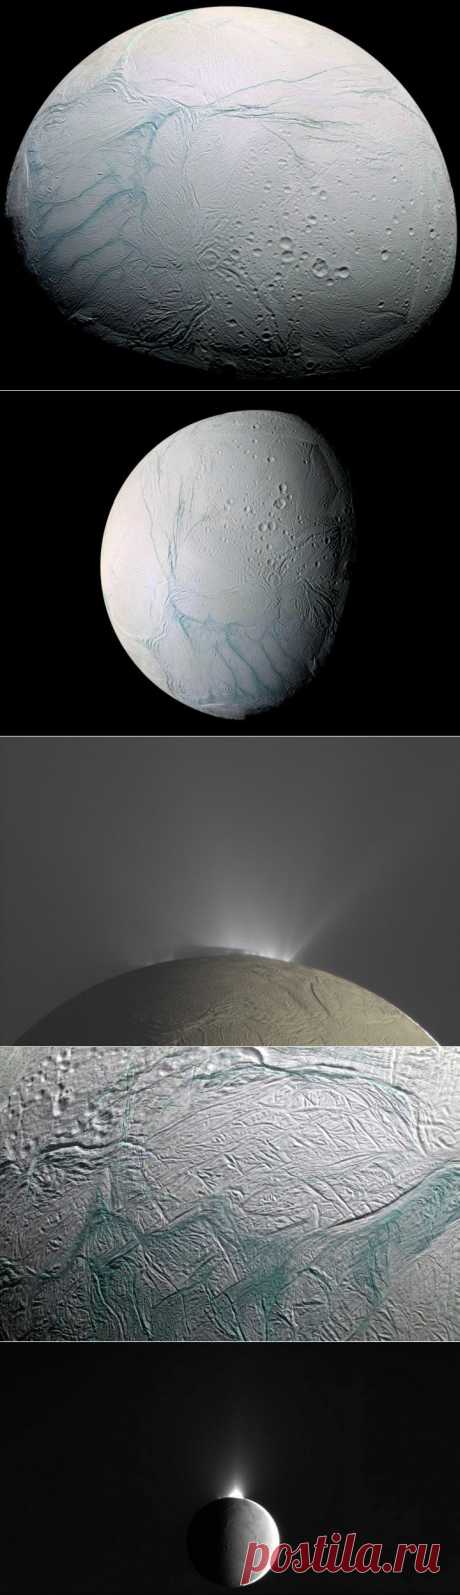 (+1) - Энцелад - покрытый льдами спутник Сатурна | НАУКА И ЖИЗНЬ